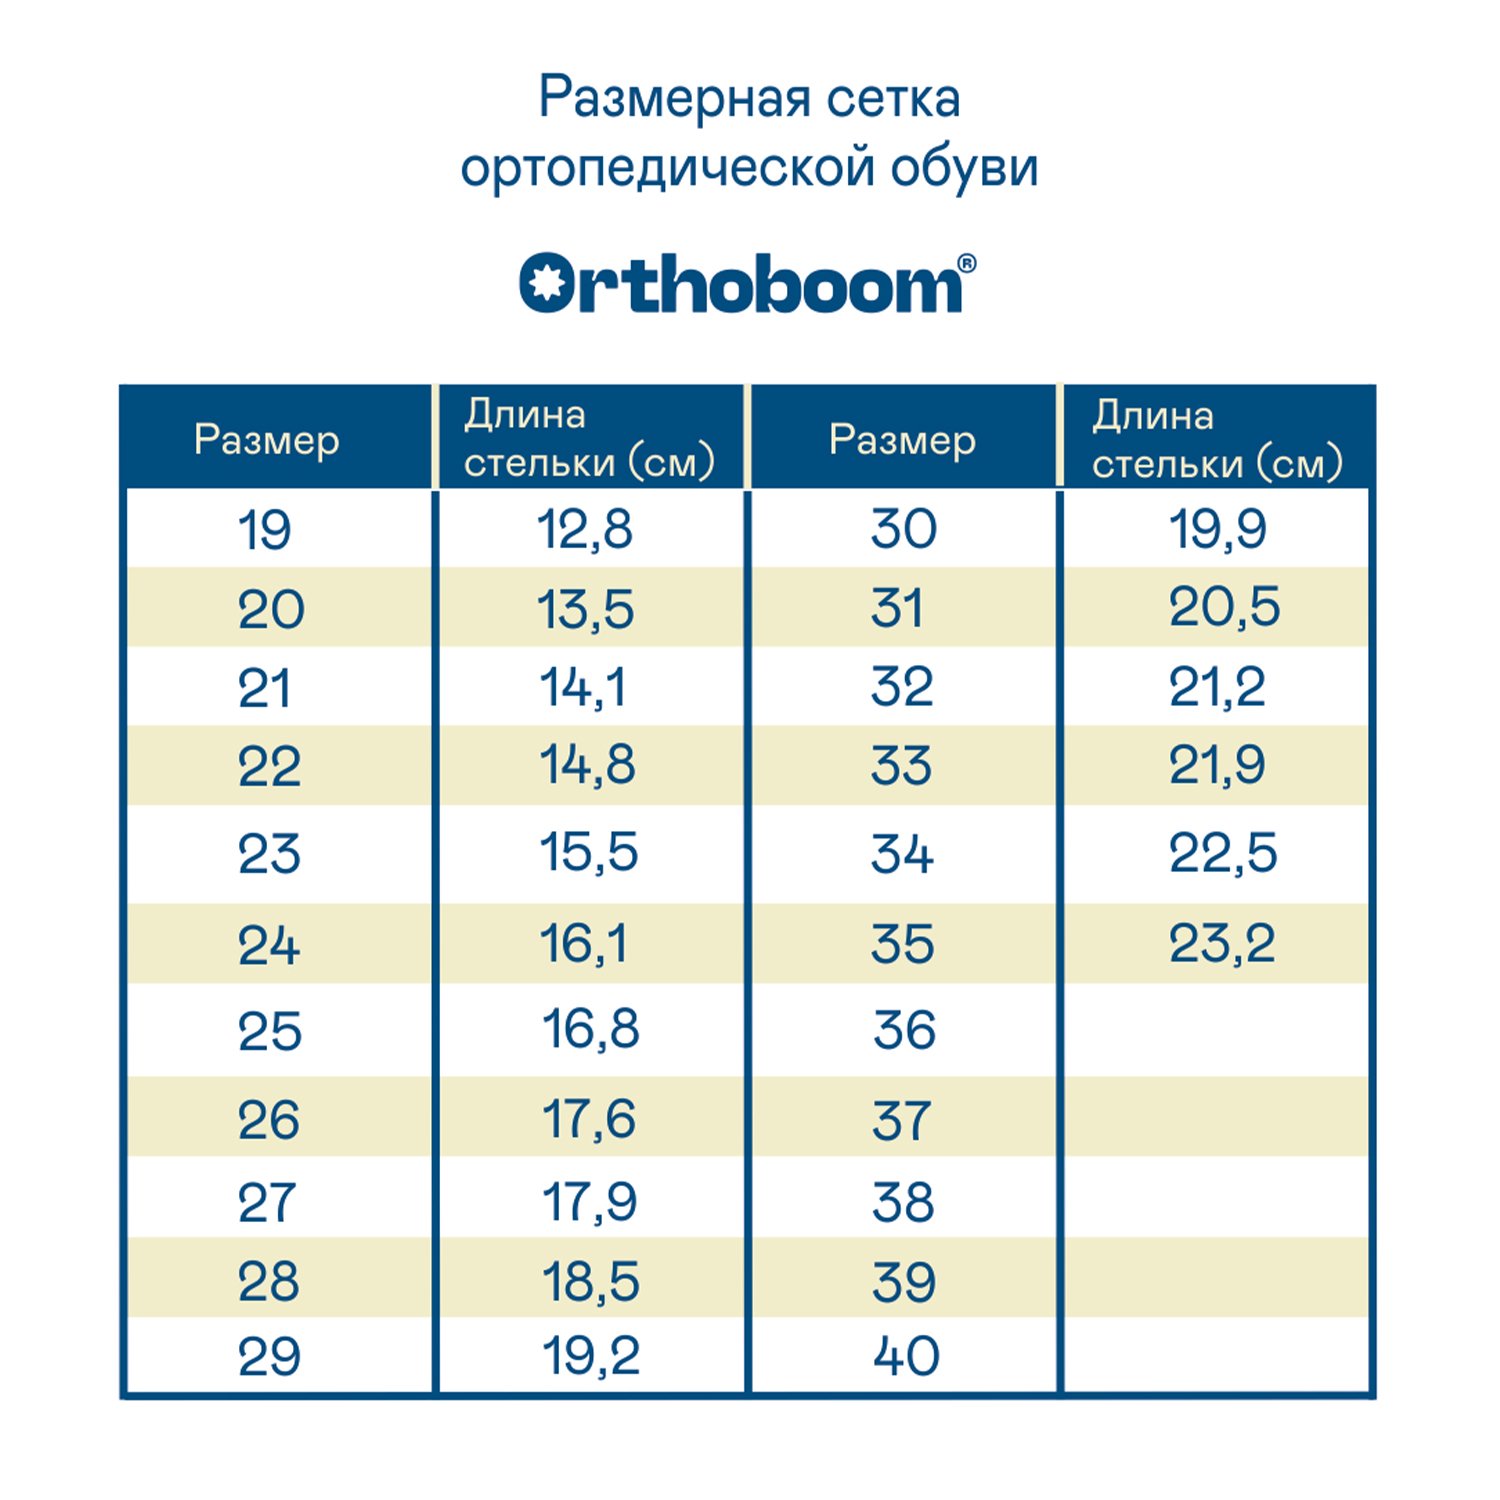 Детские сандалии ORTHOBOOM 27057-15 серый-синий-черный